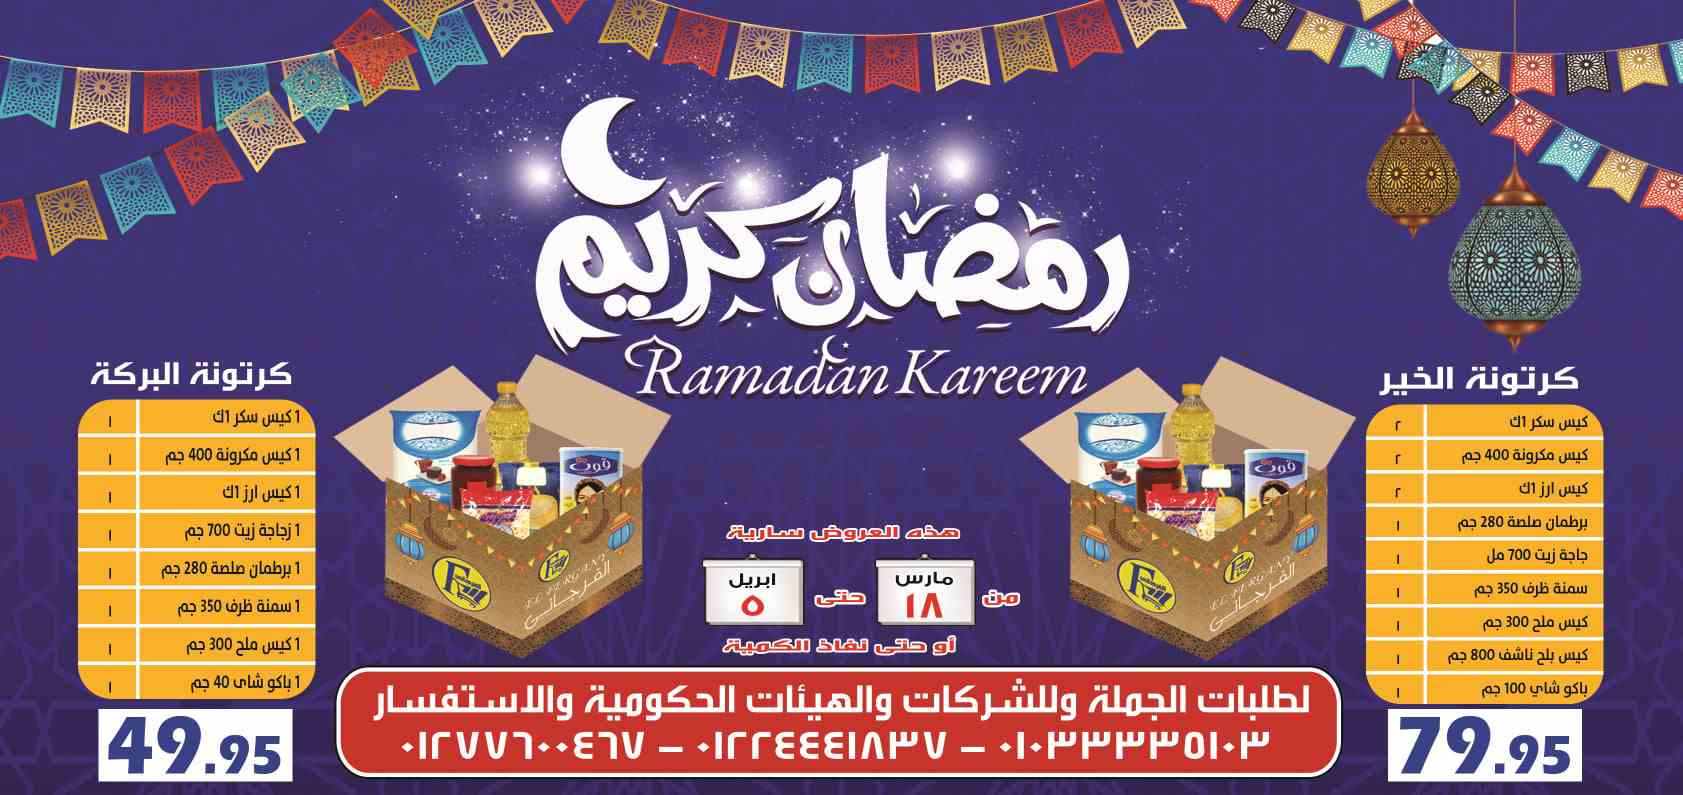 عروض الفرجانى رمضان من 18 مارس حتى 5 ابريل 2021